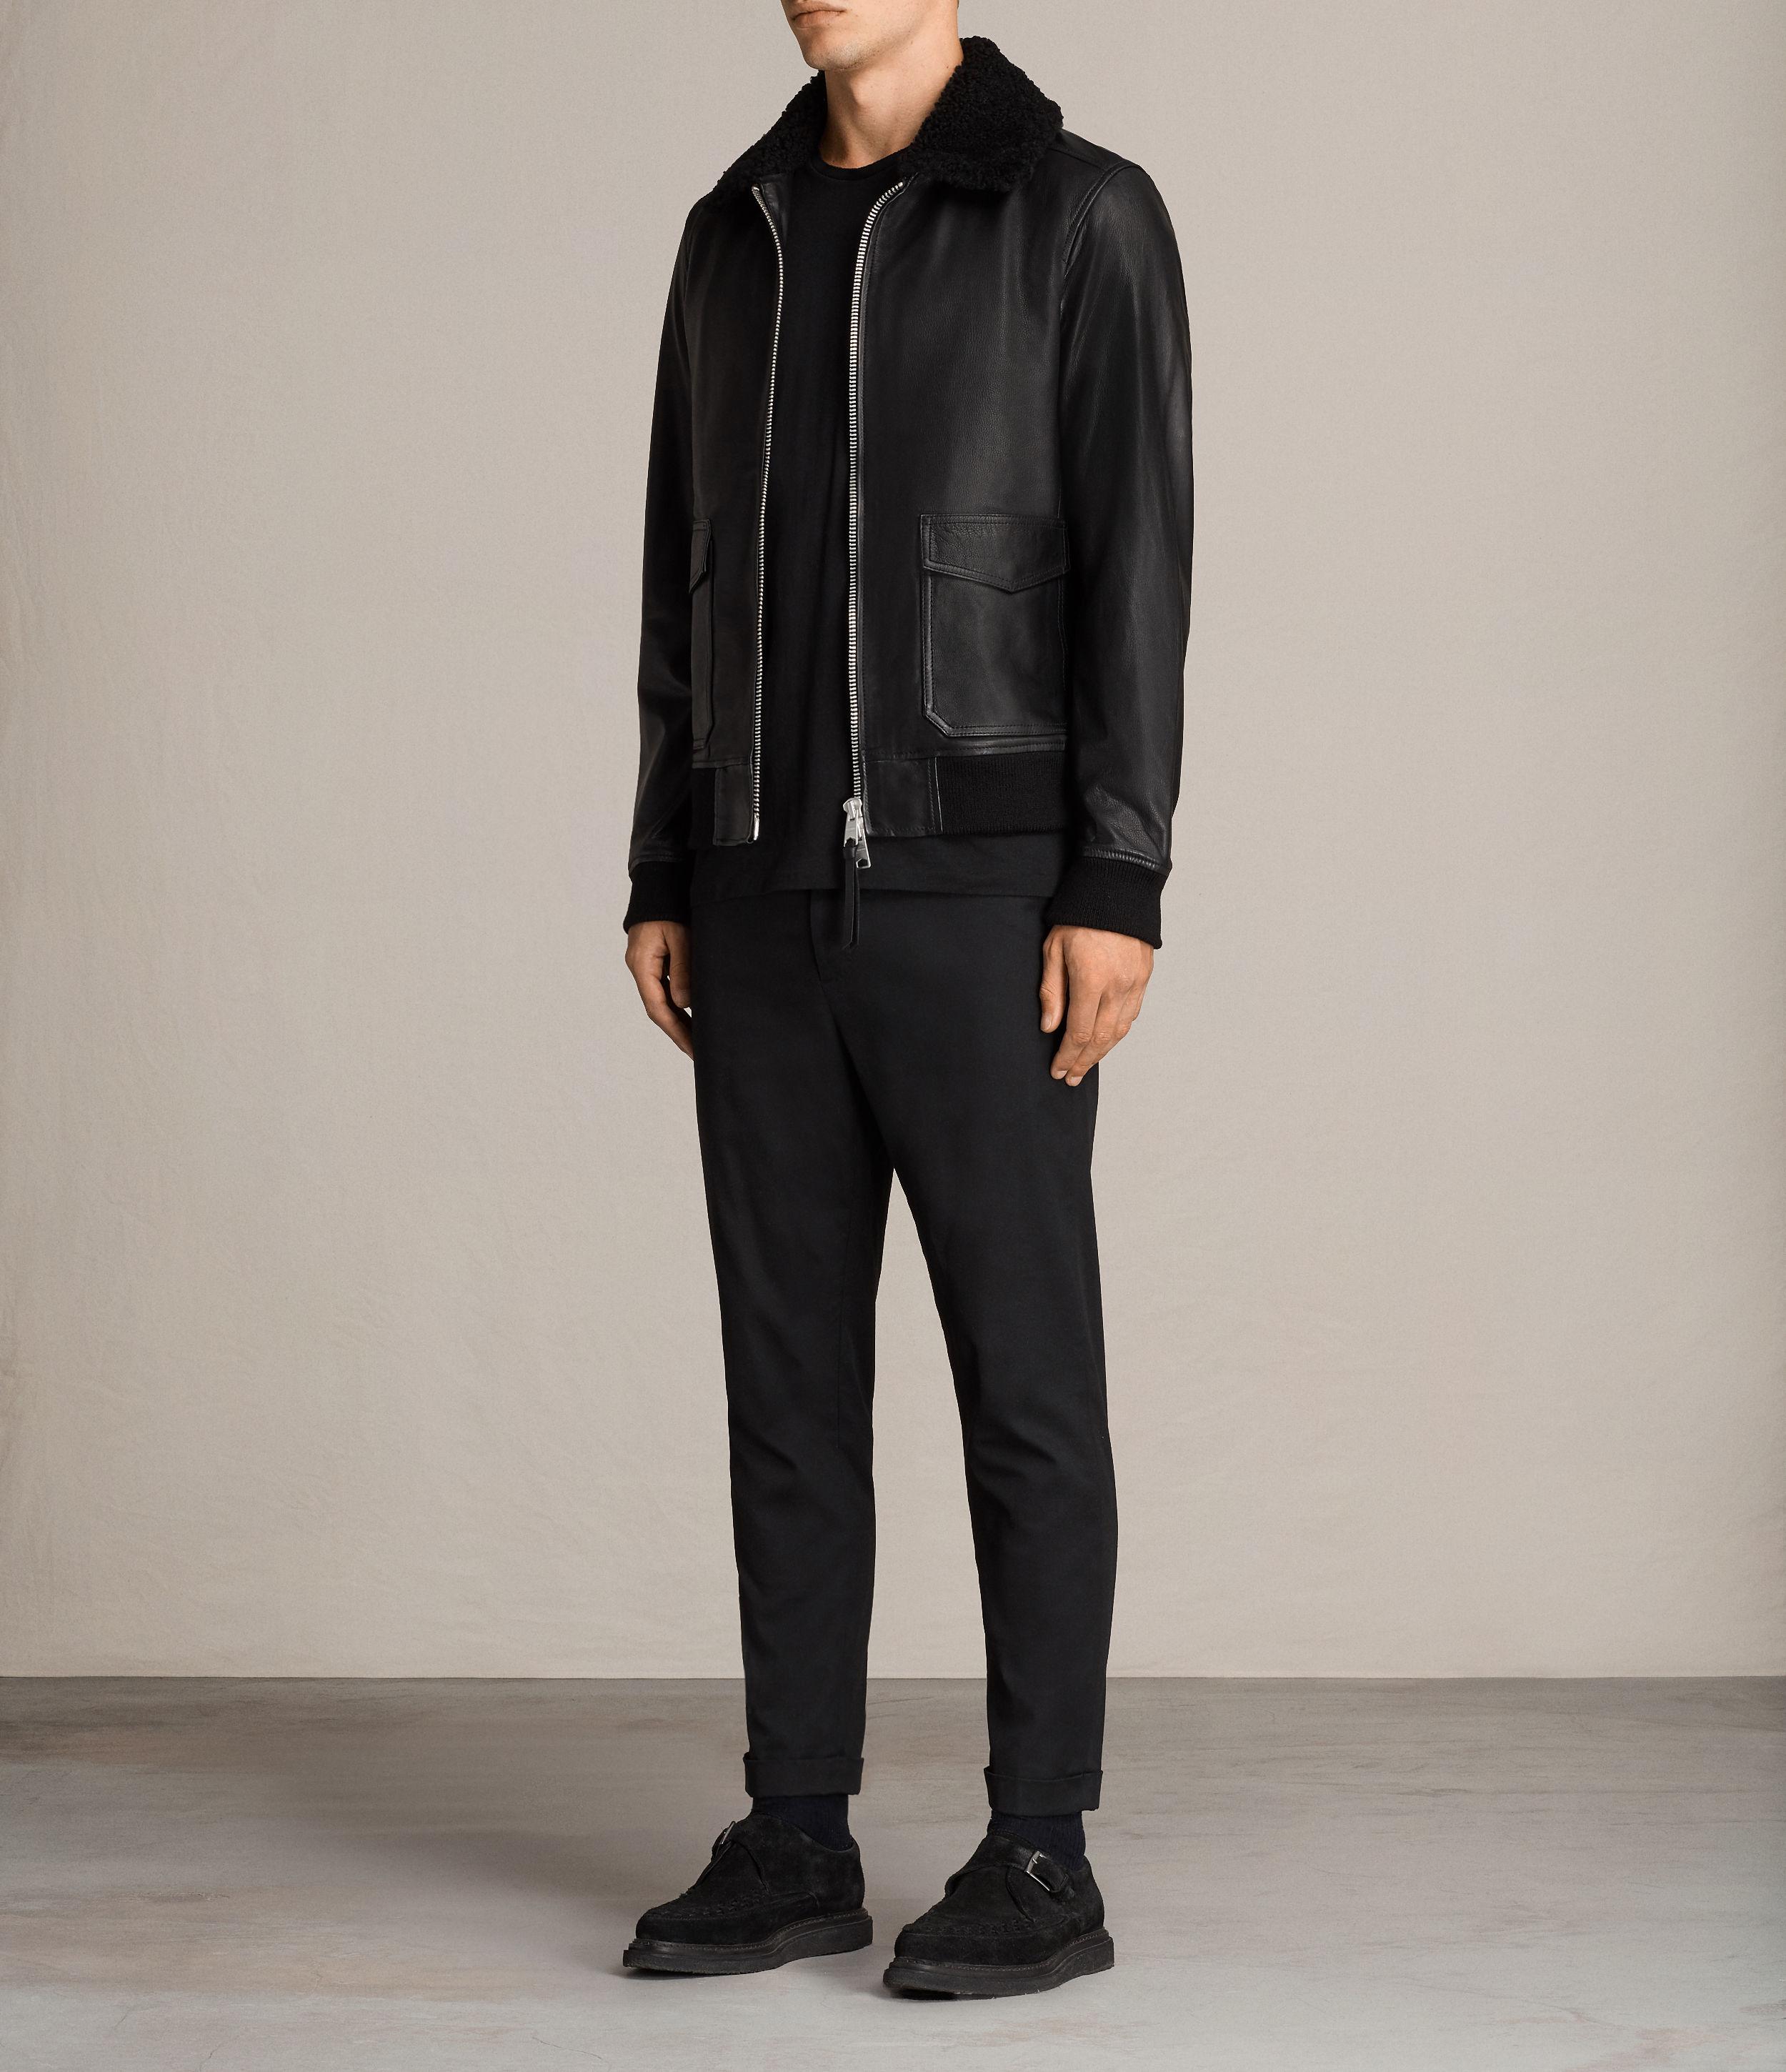 AllSaints Oban Aviator Leather Jacket in Black for Men - Lyst